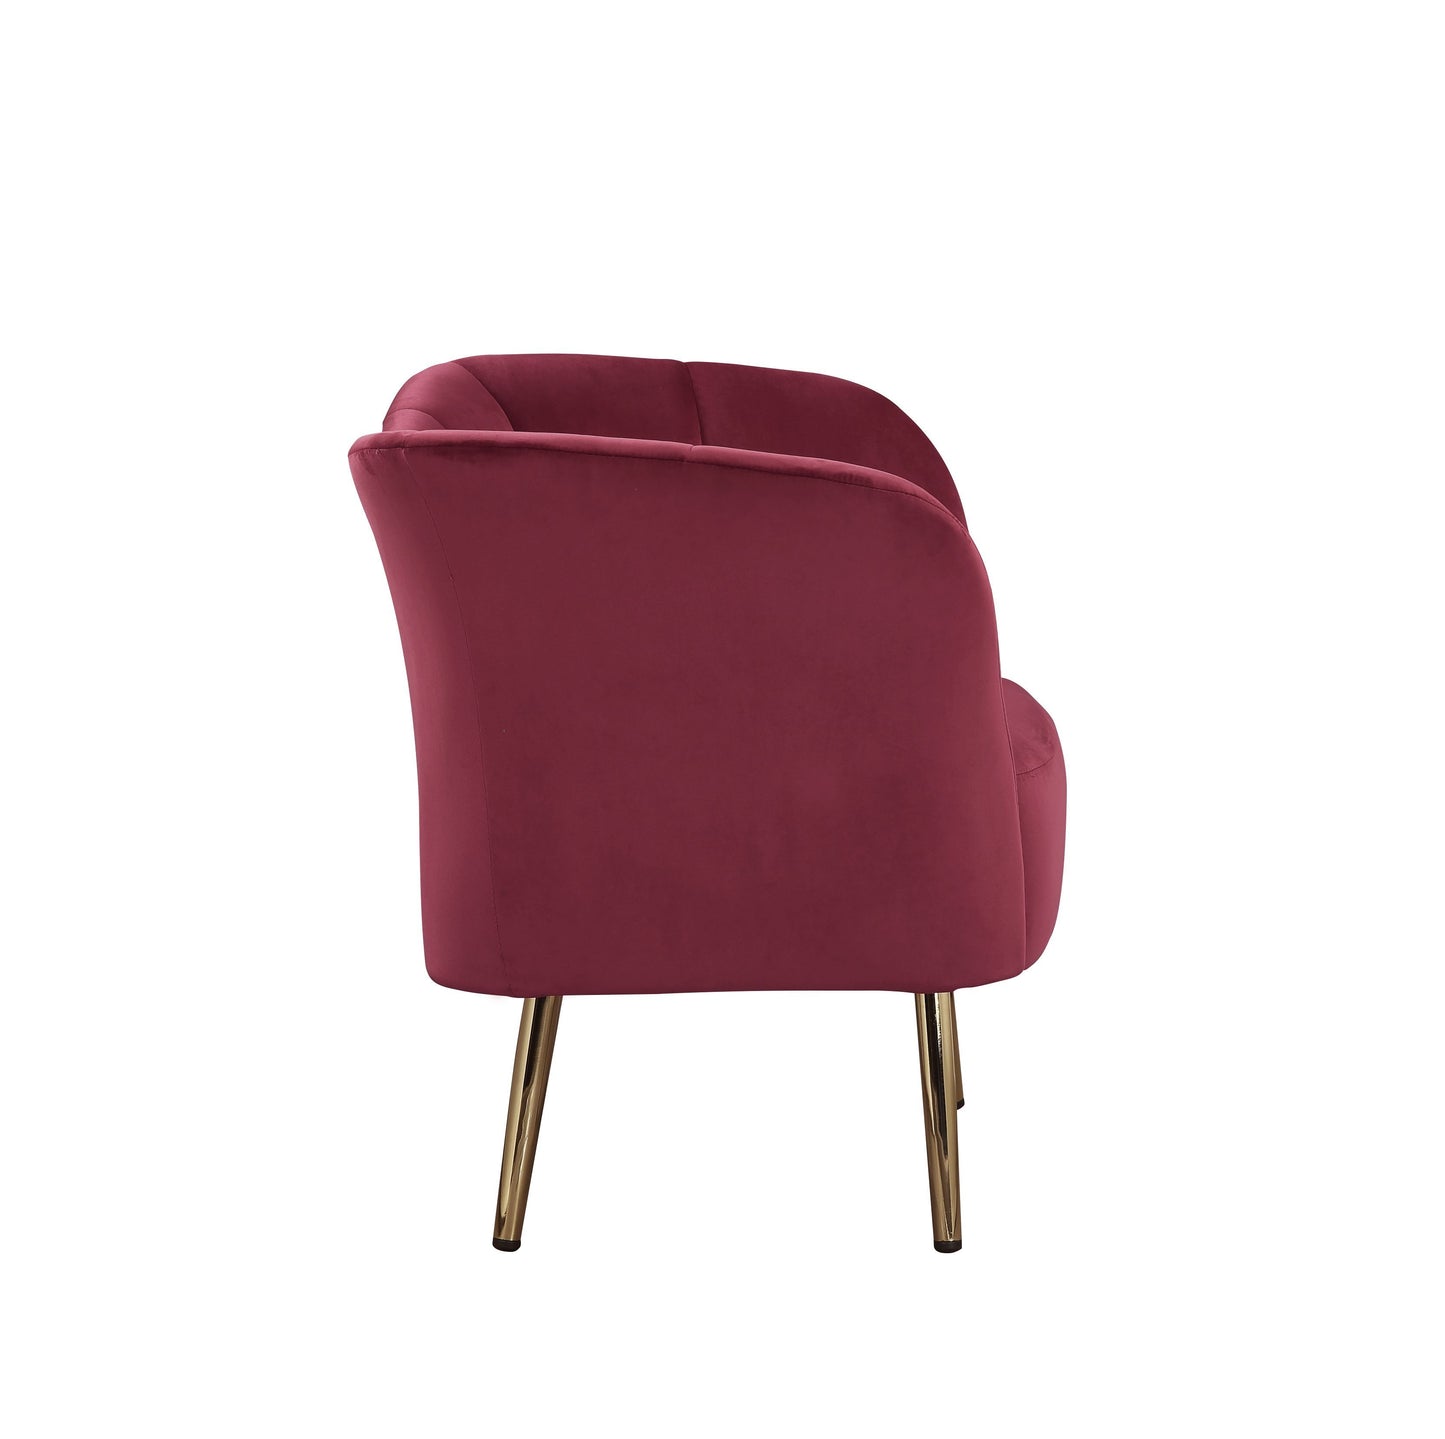 Reese Accent Chair, Burgundy Velvet & Gold